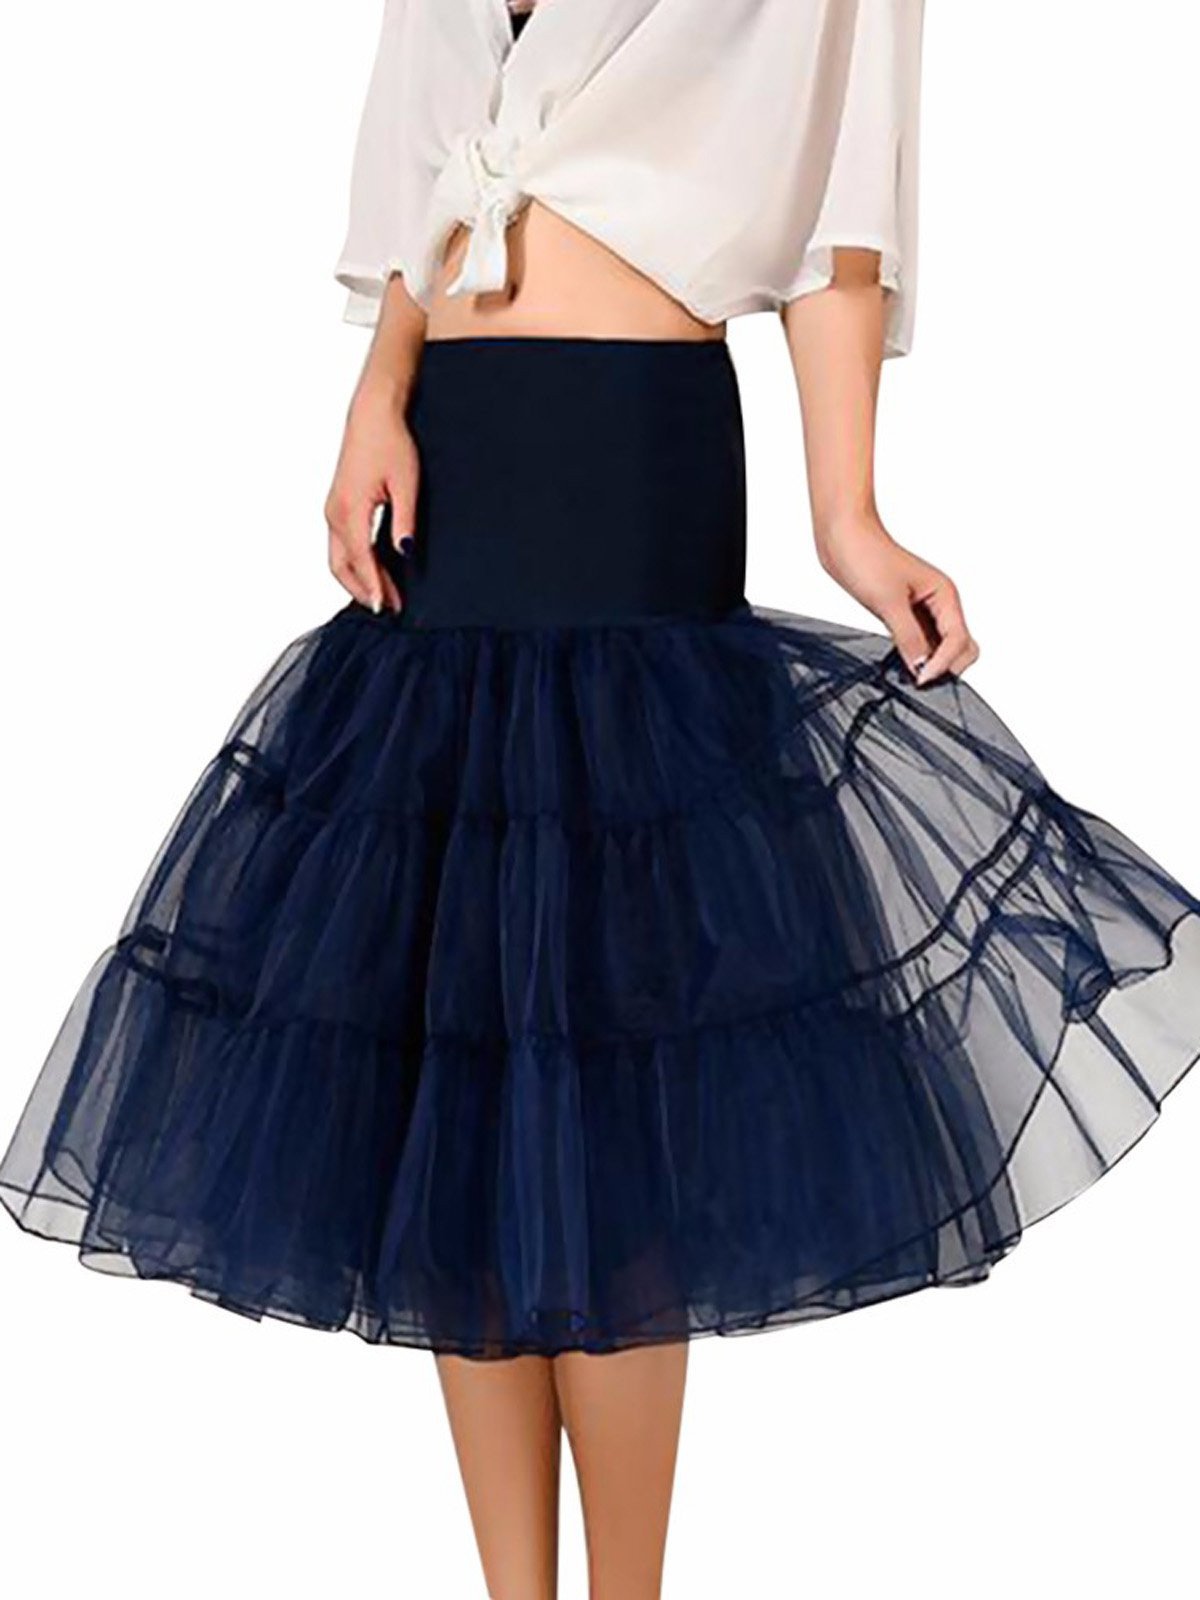 Нижняя юбка-пачка 1950-х годов из кринолина под юбкой